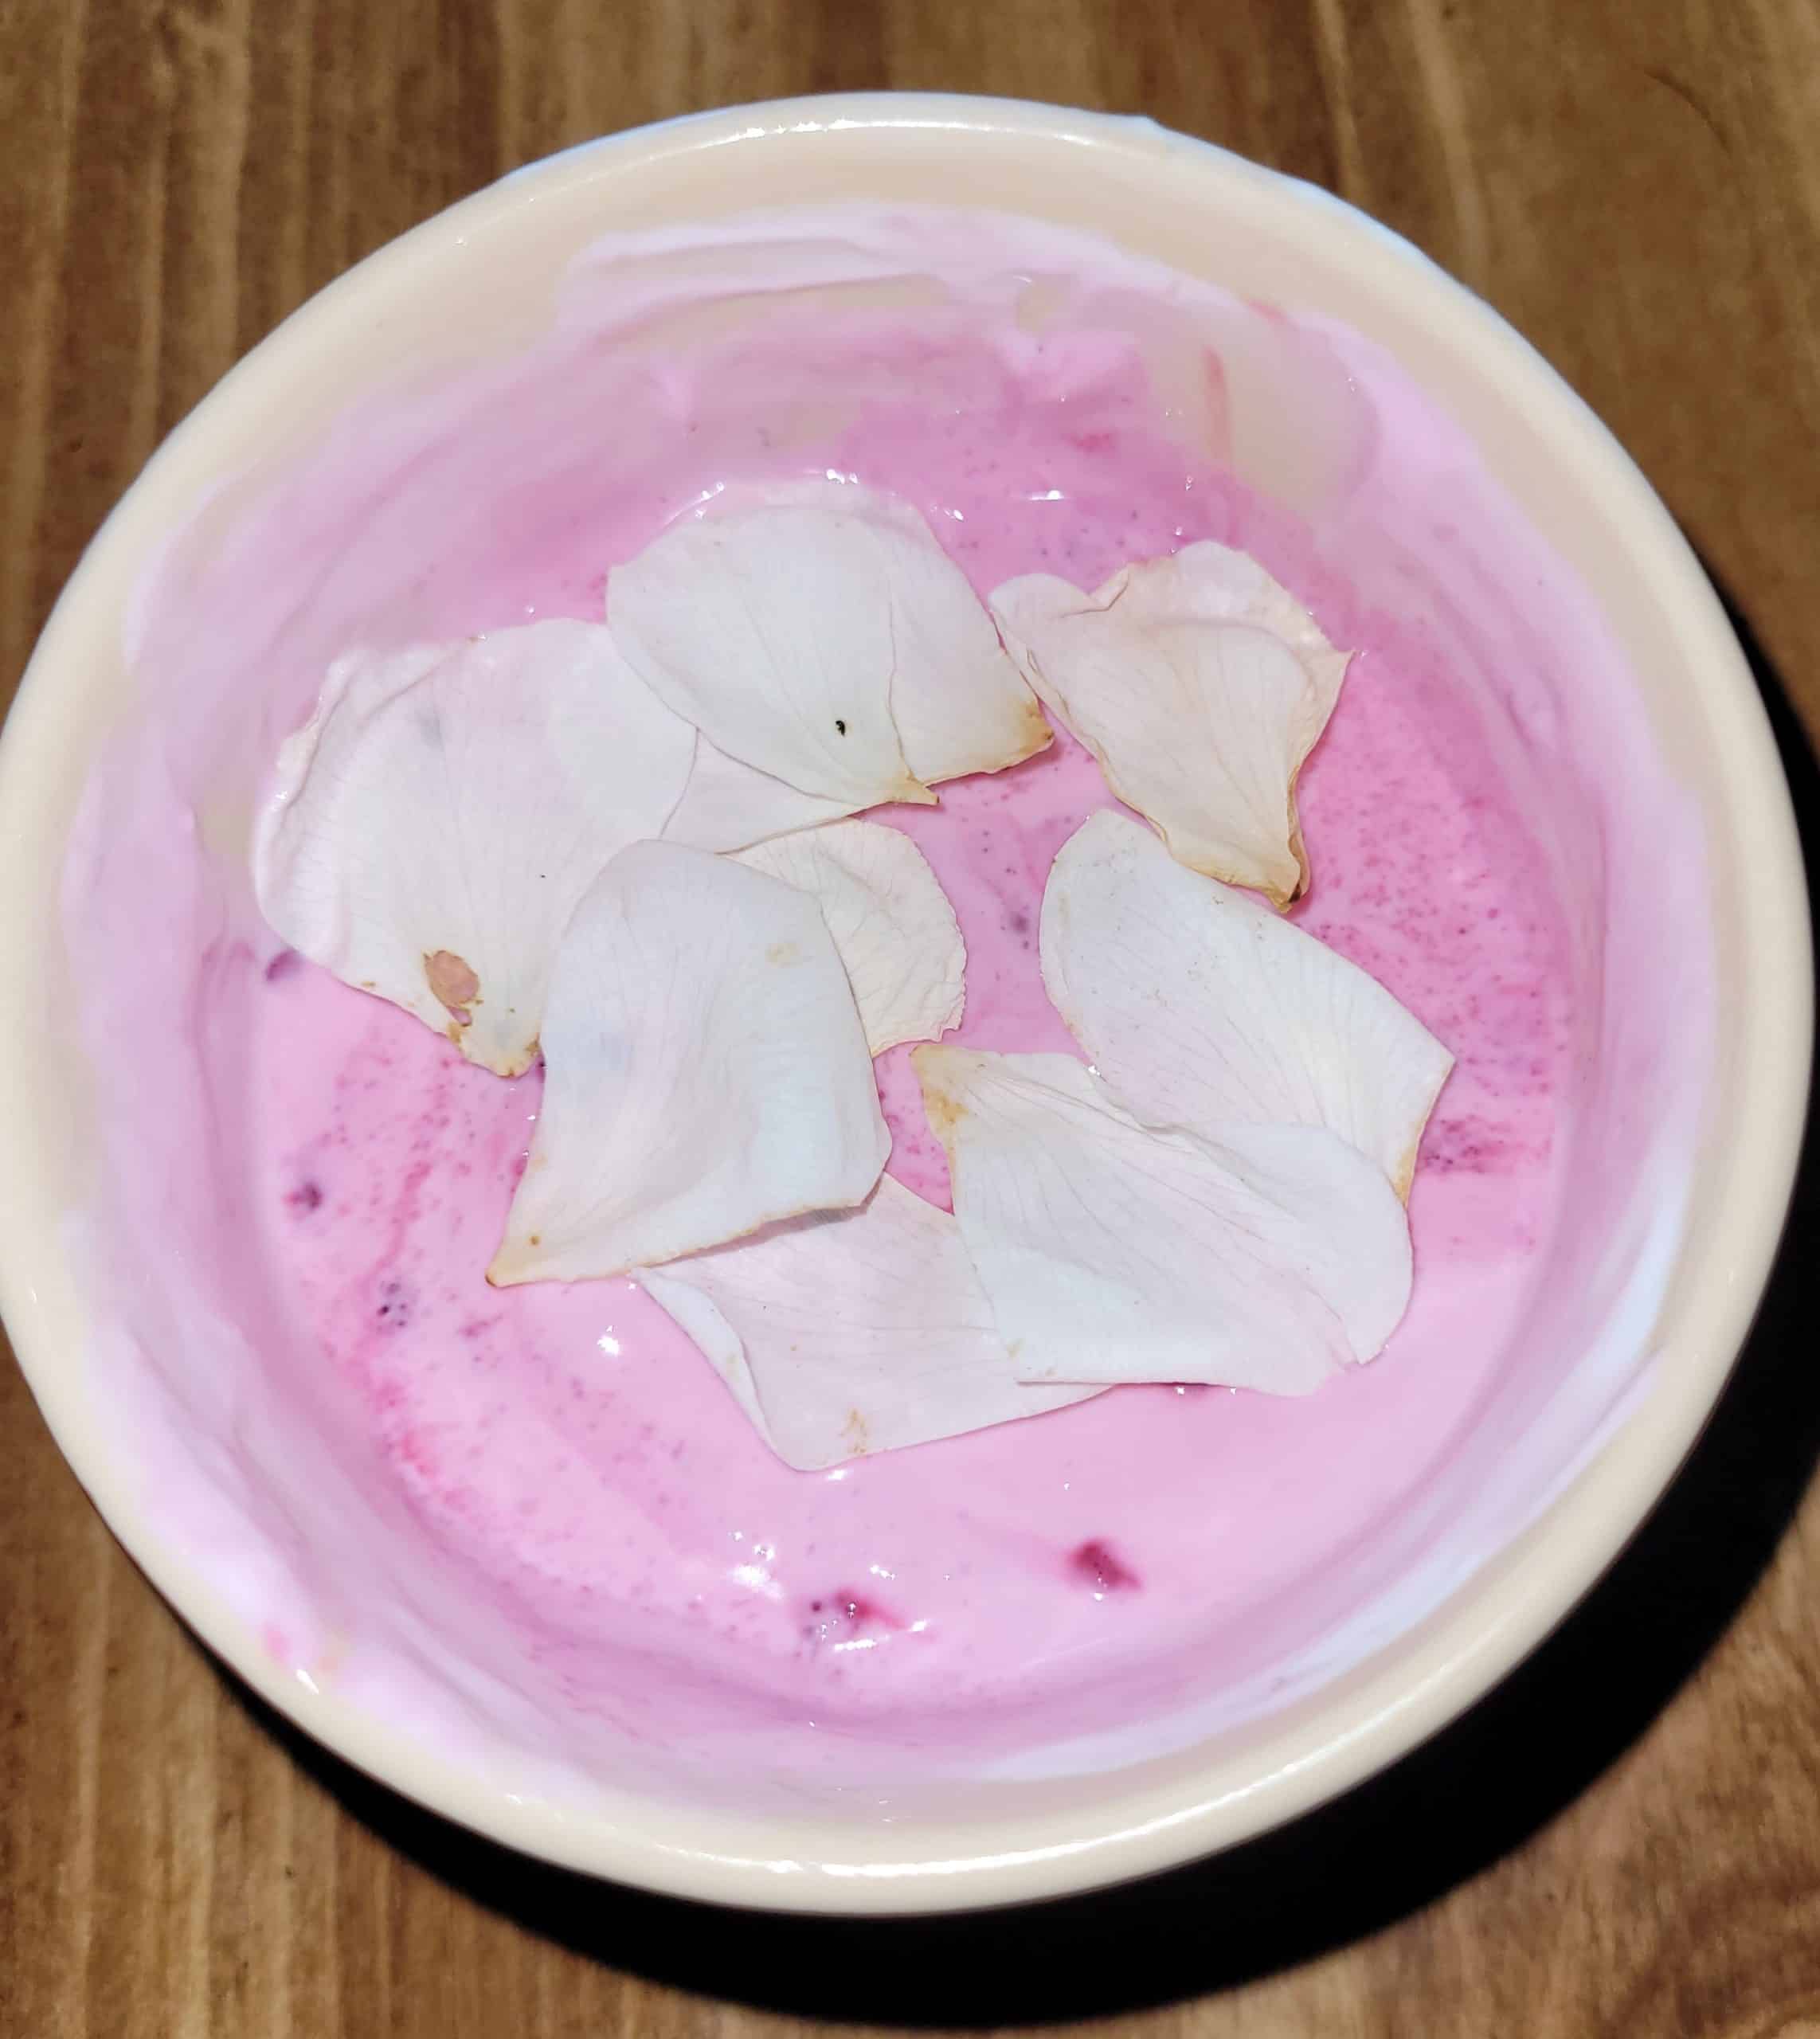 Rose petals in yogurt